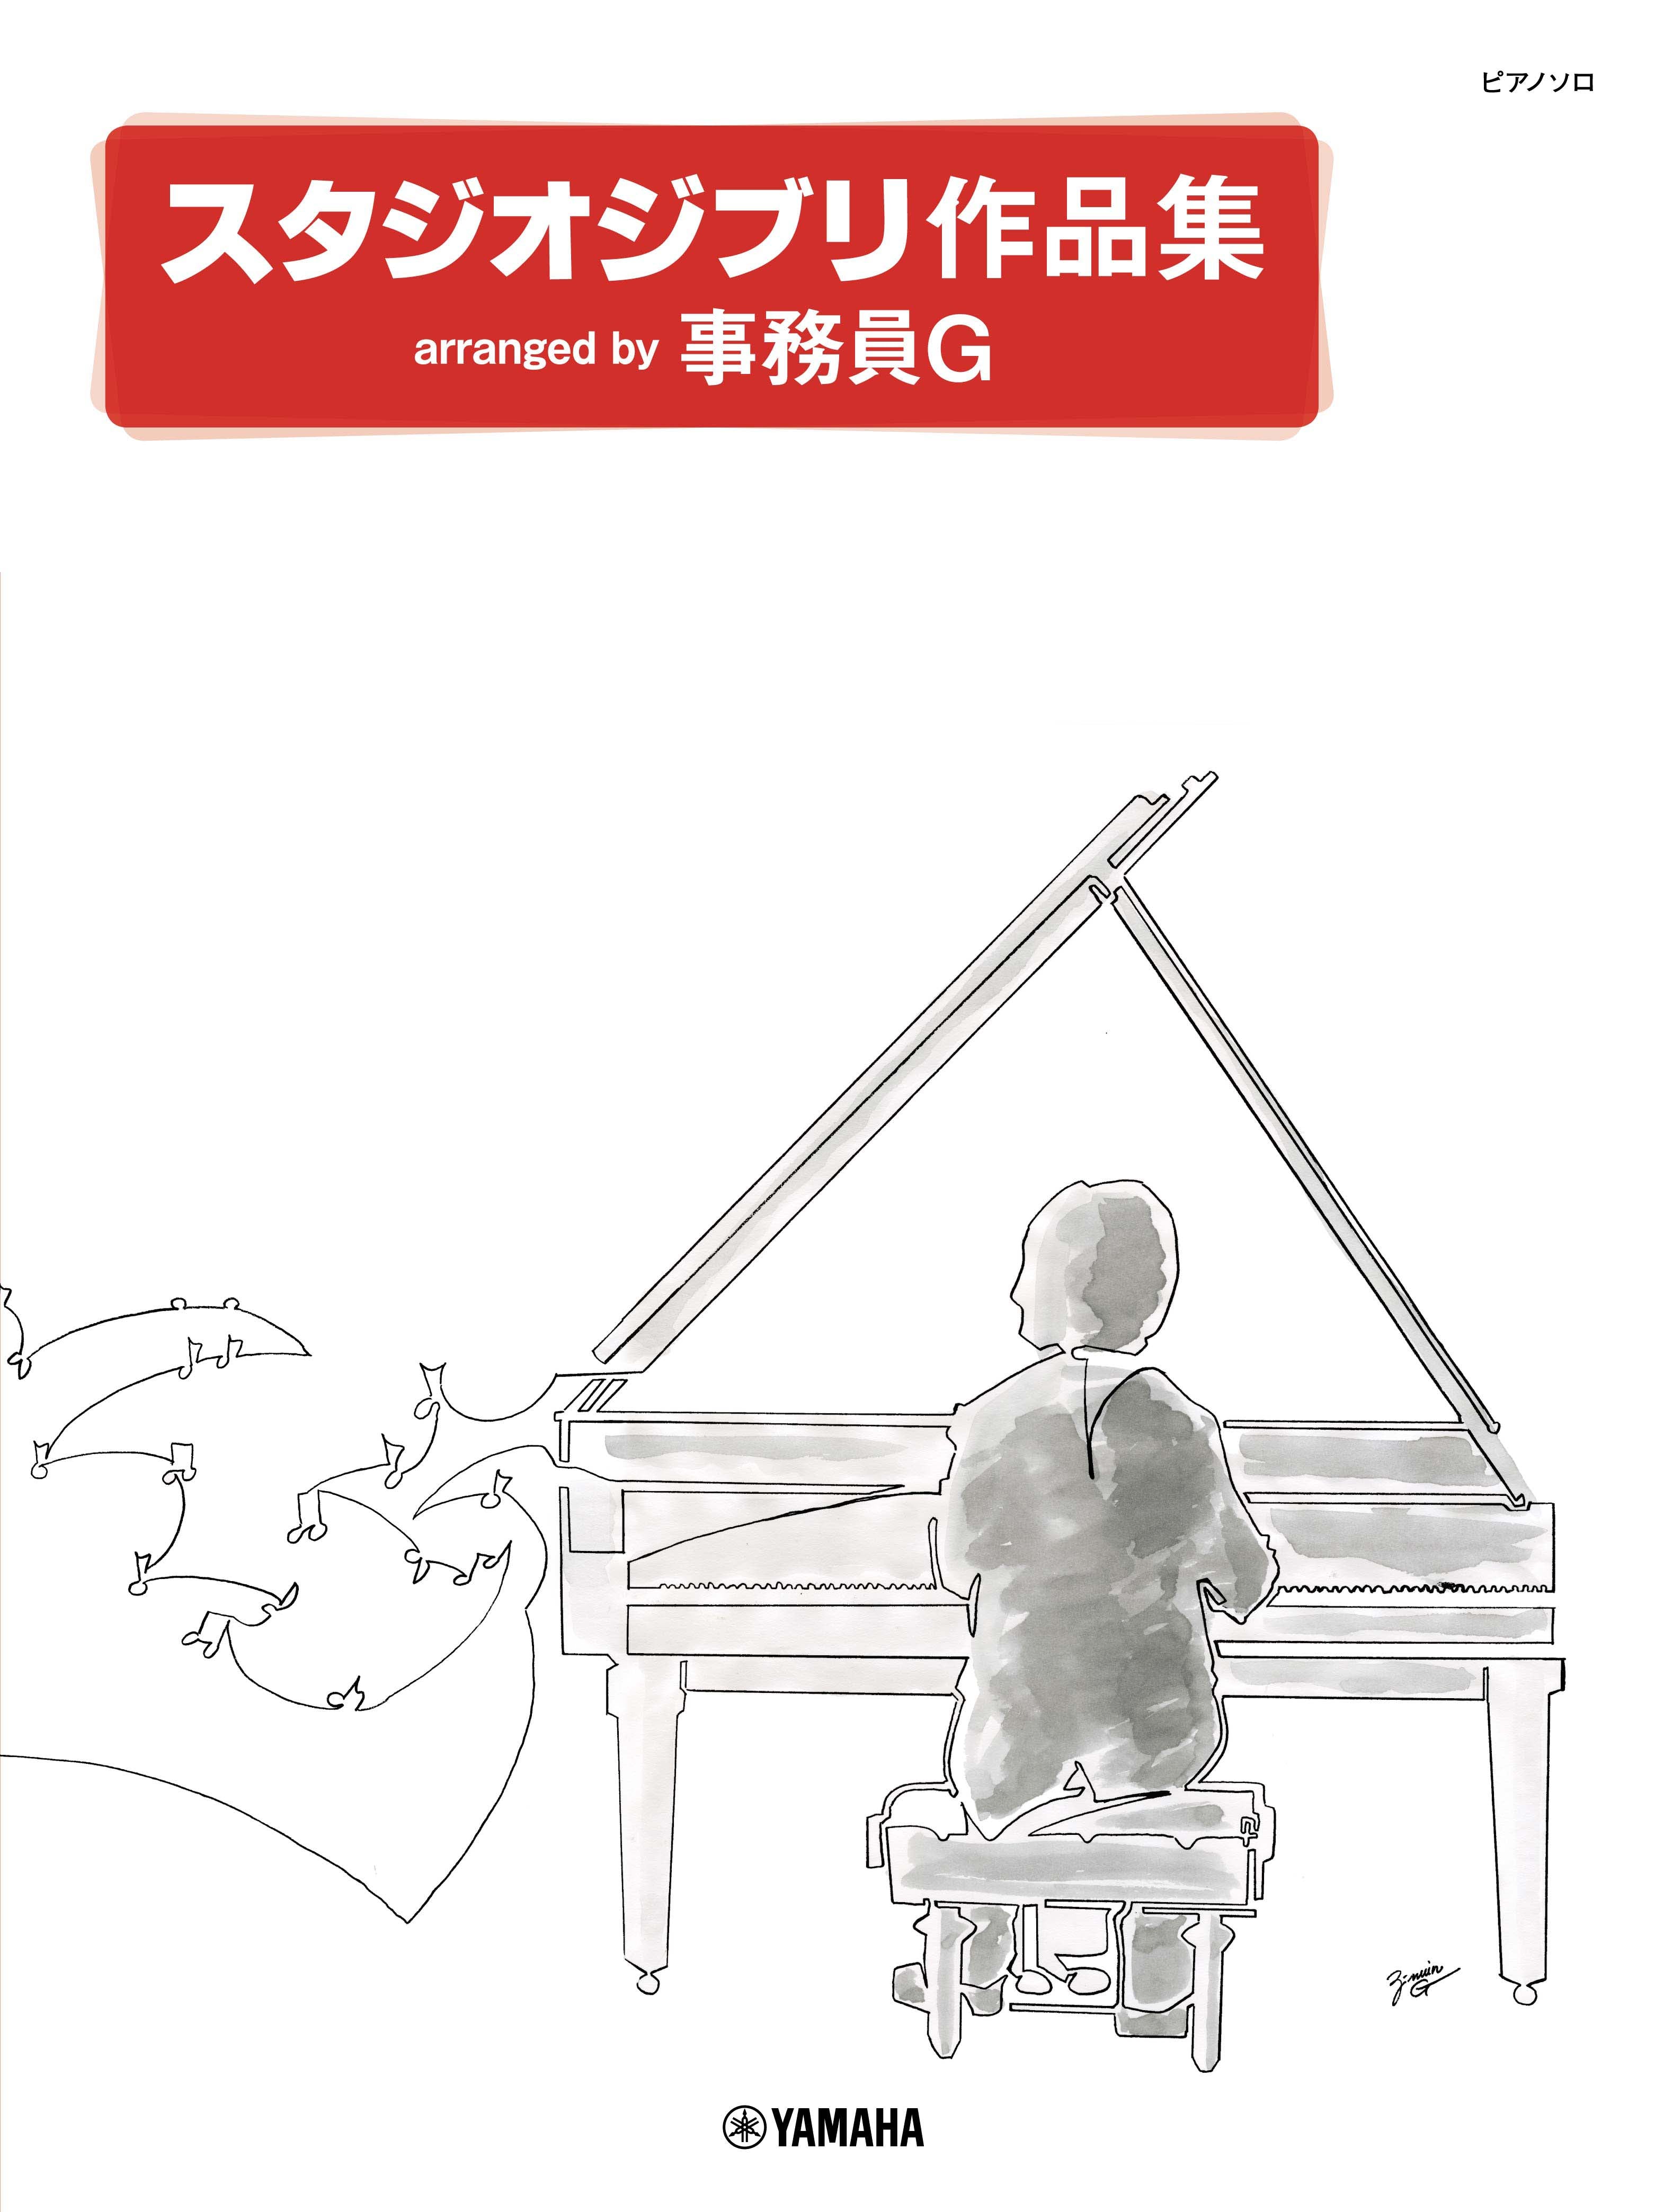 ピアノソロ スタジオジブリ作品集 arranged by 事務員G ヤマハの楽譜通販サイト Sheet Music Store